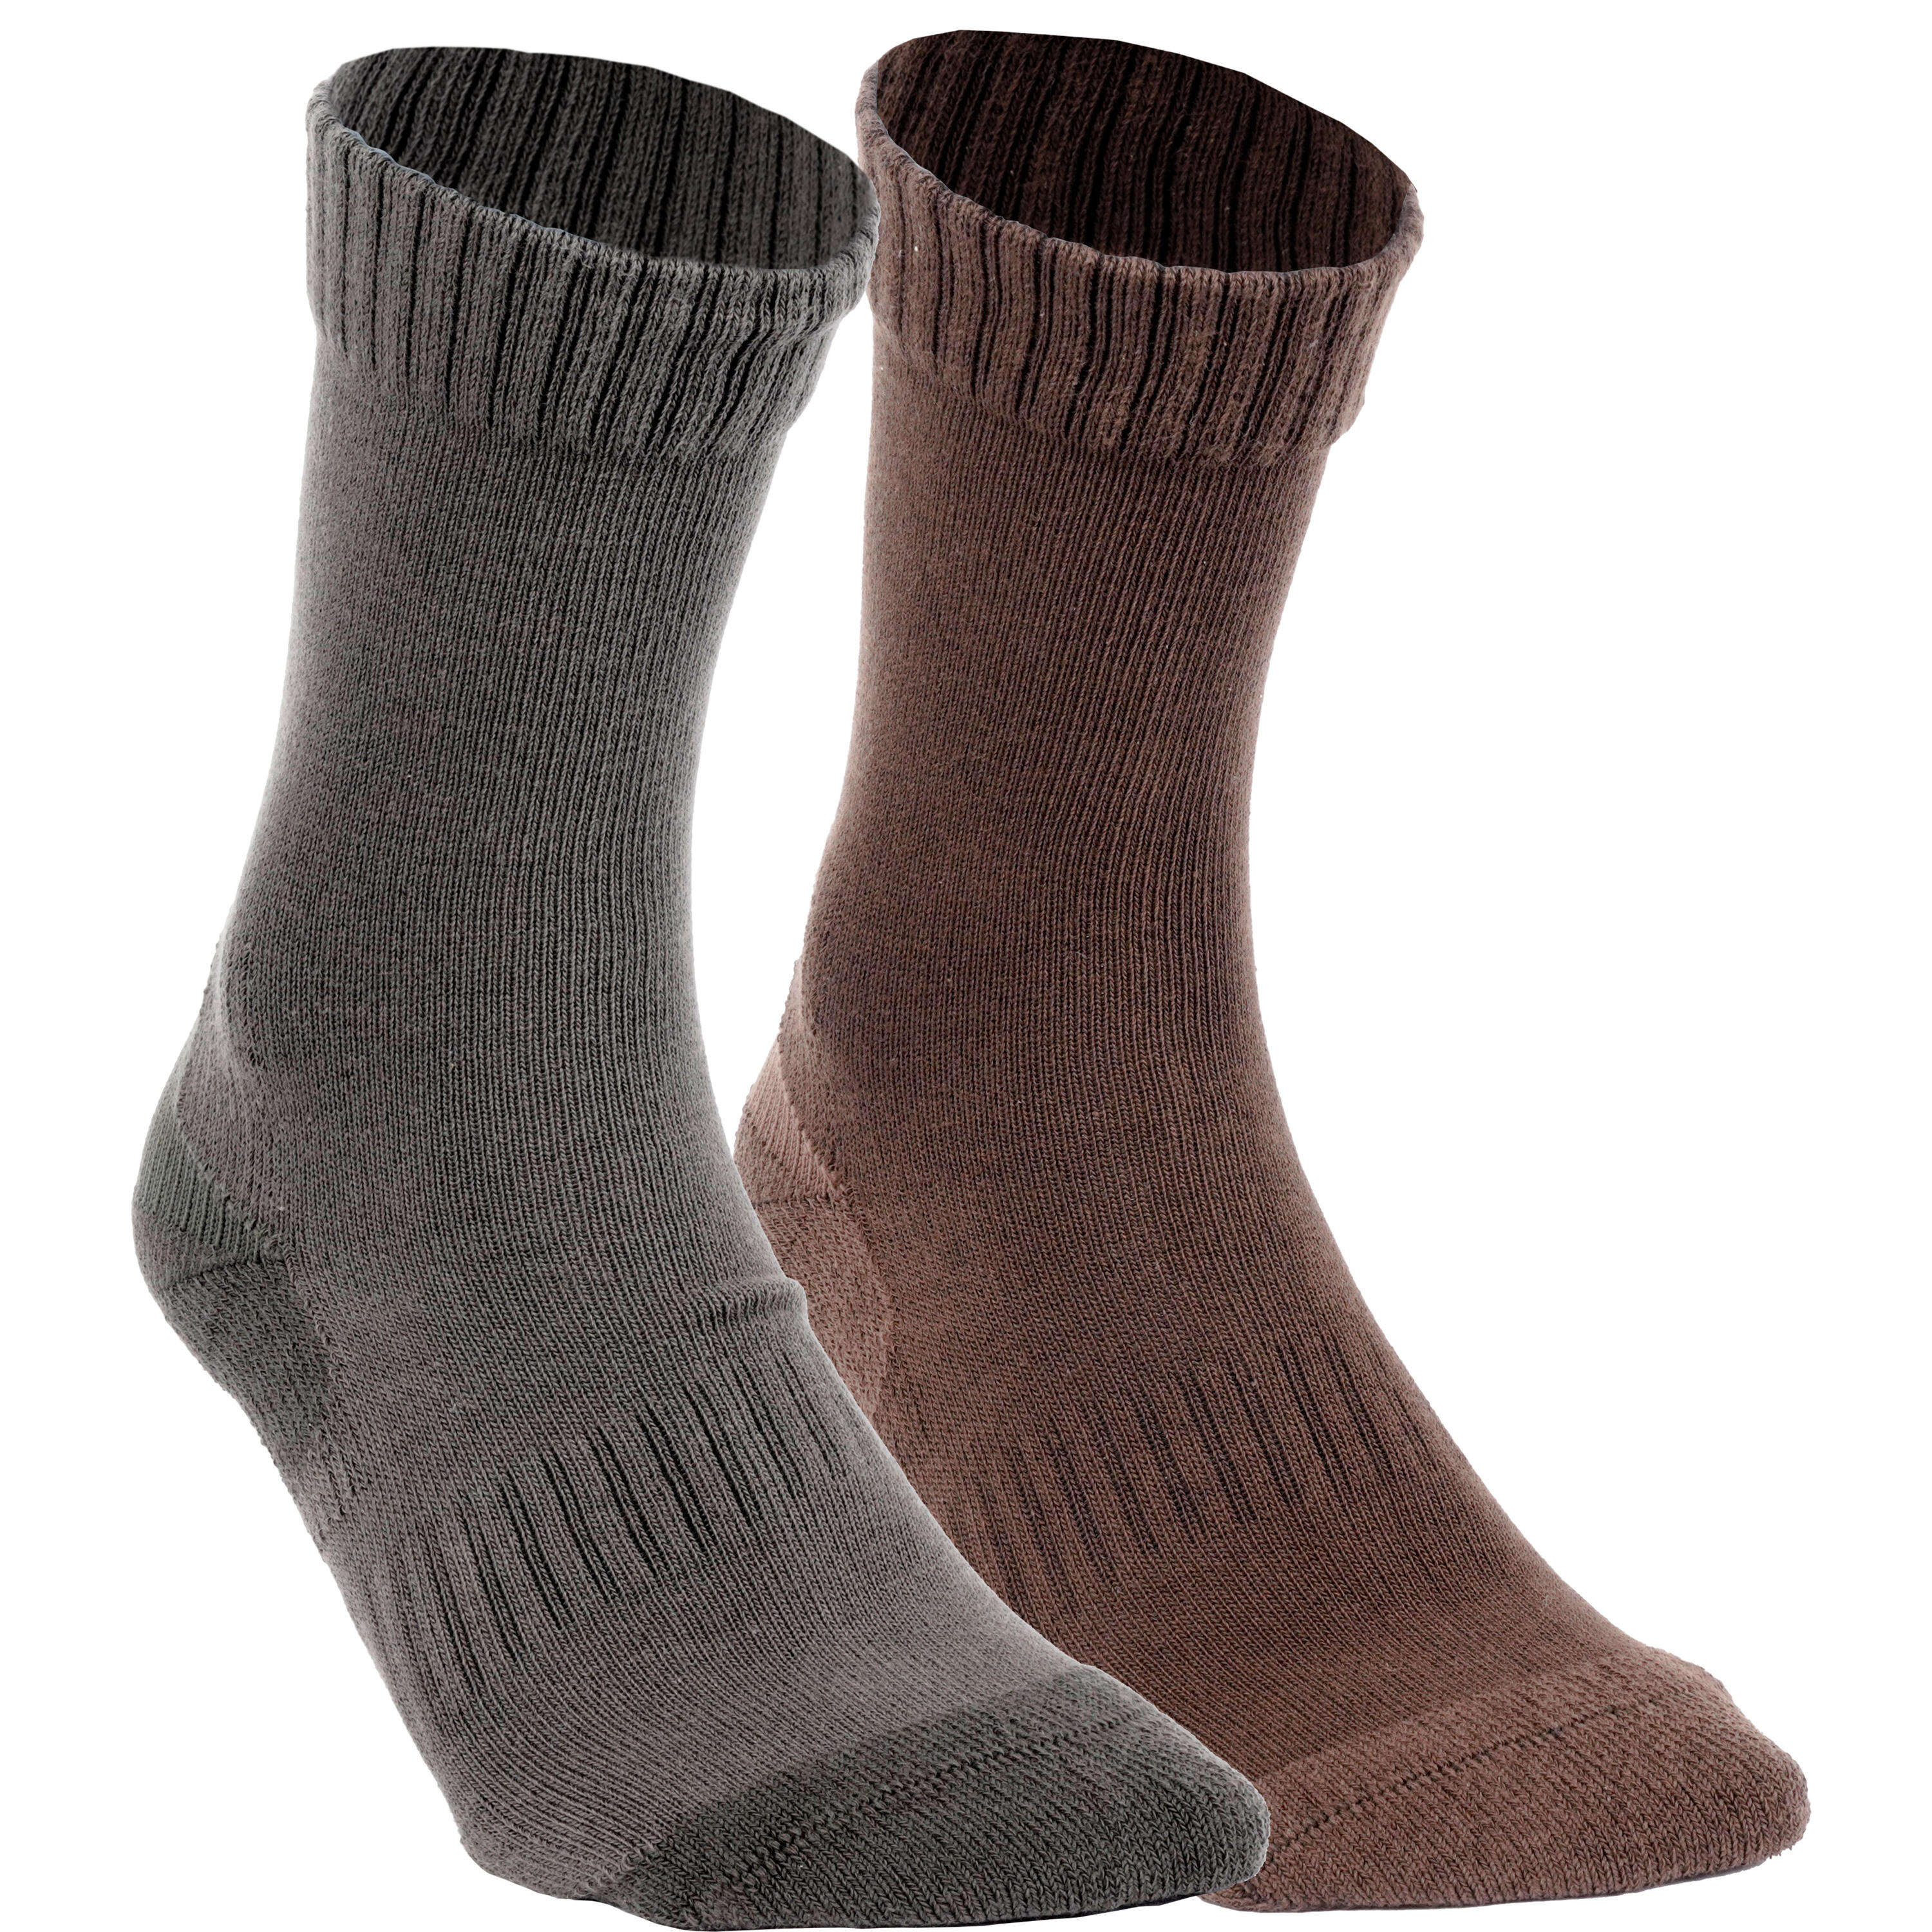 Комплект носков ACT 100 2 пары SOLOGNAC носки женские хлопковые махровые корея